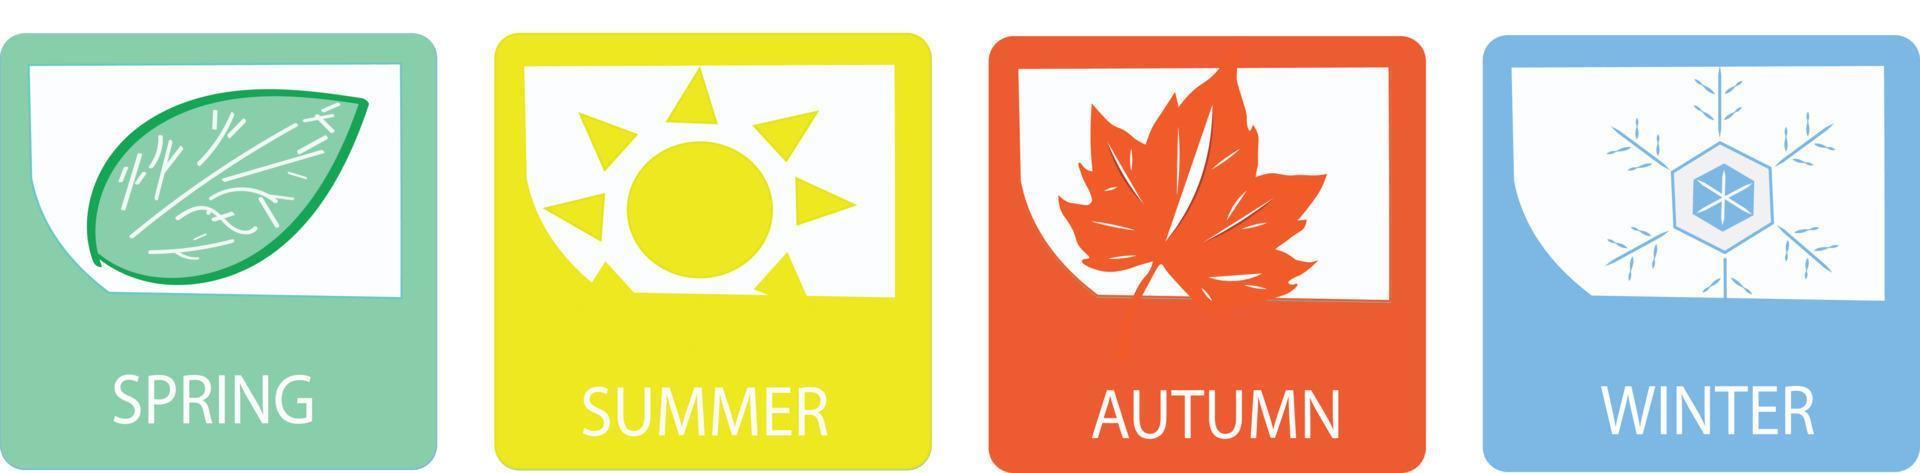 eine Reihe von Symbolen für vier Jahreszeiten. Winter, Frühling, Sommer und Herbst. Jahreszeiten-Logo auf weißem Hintergrund - Vektor für Infografik und Werbung